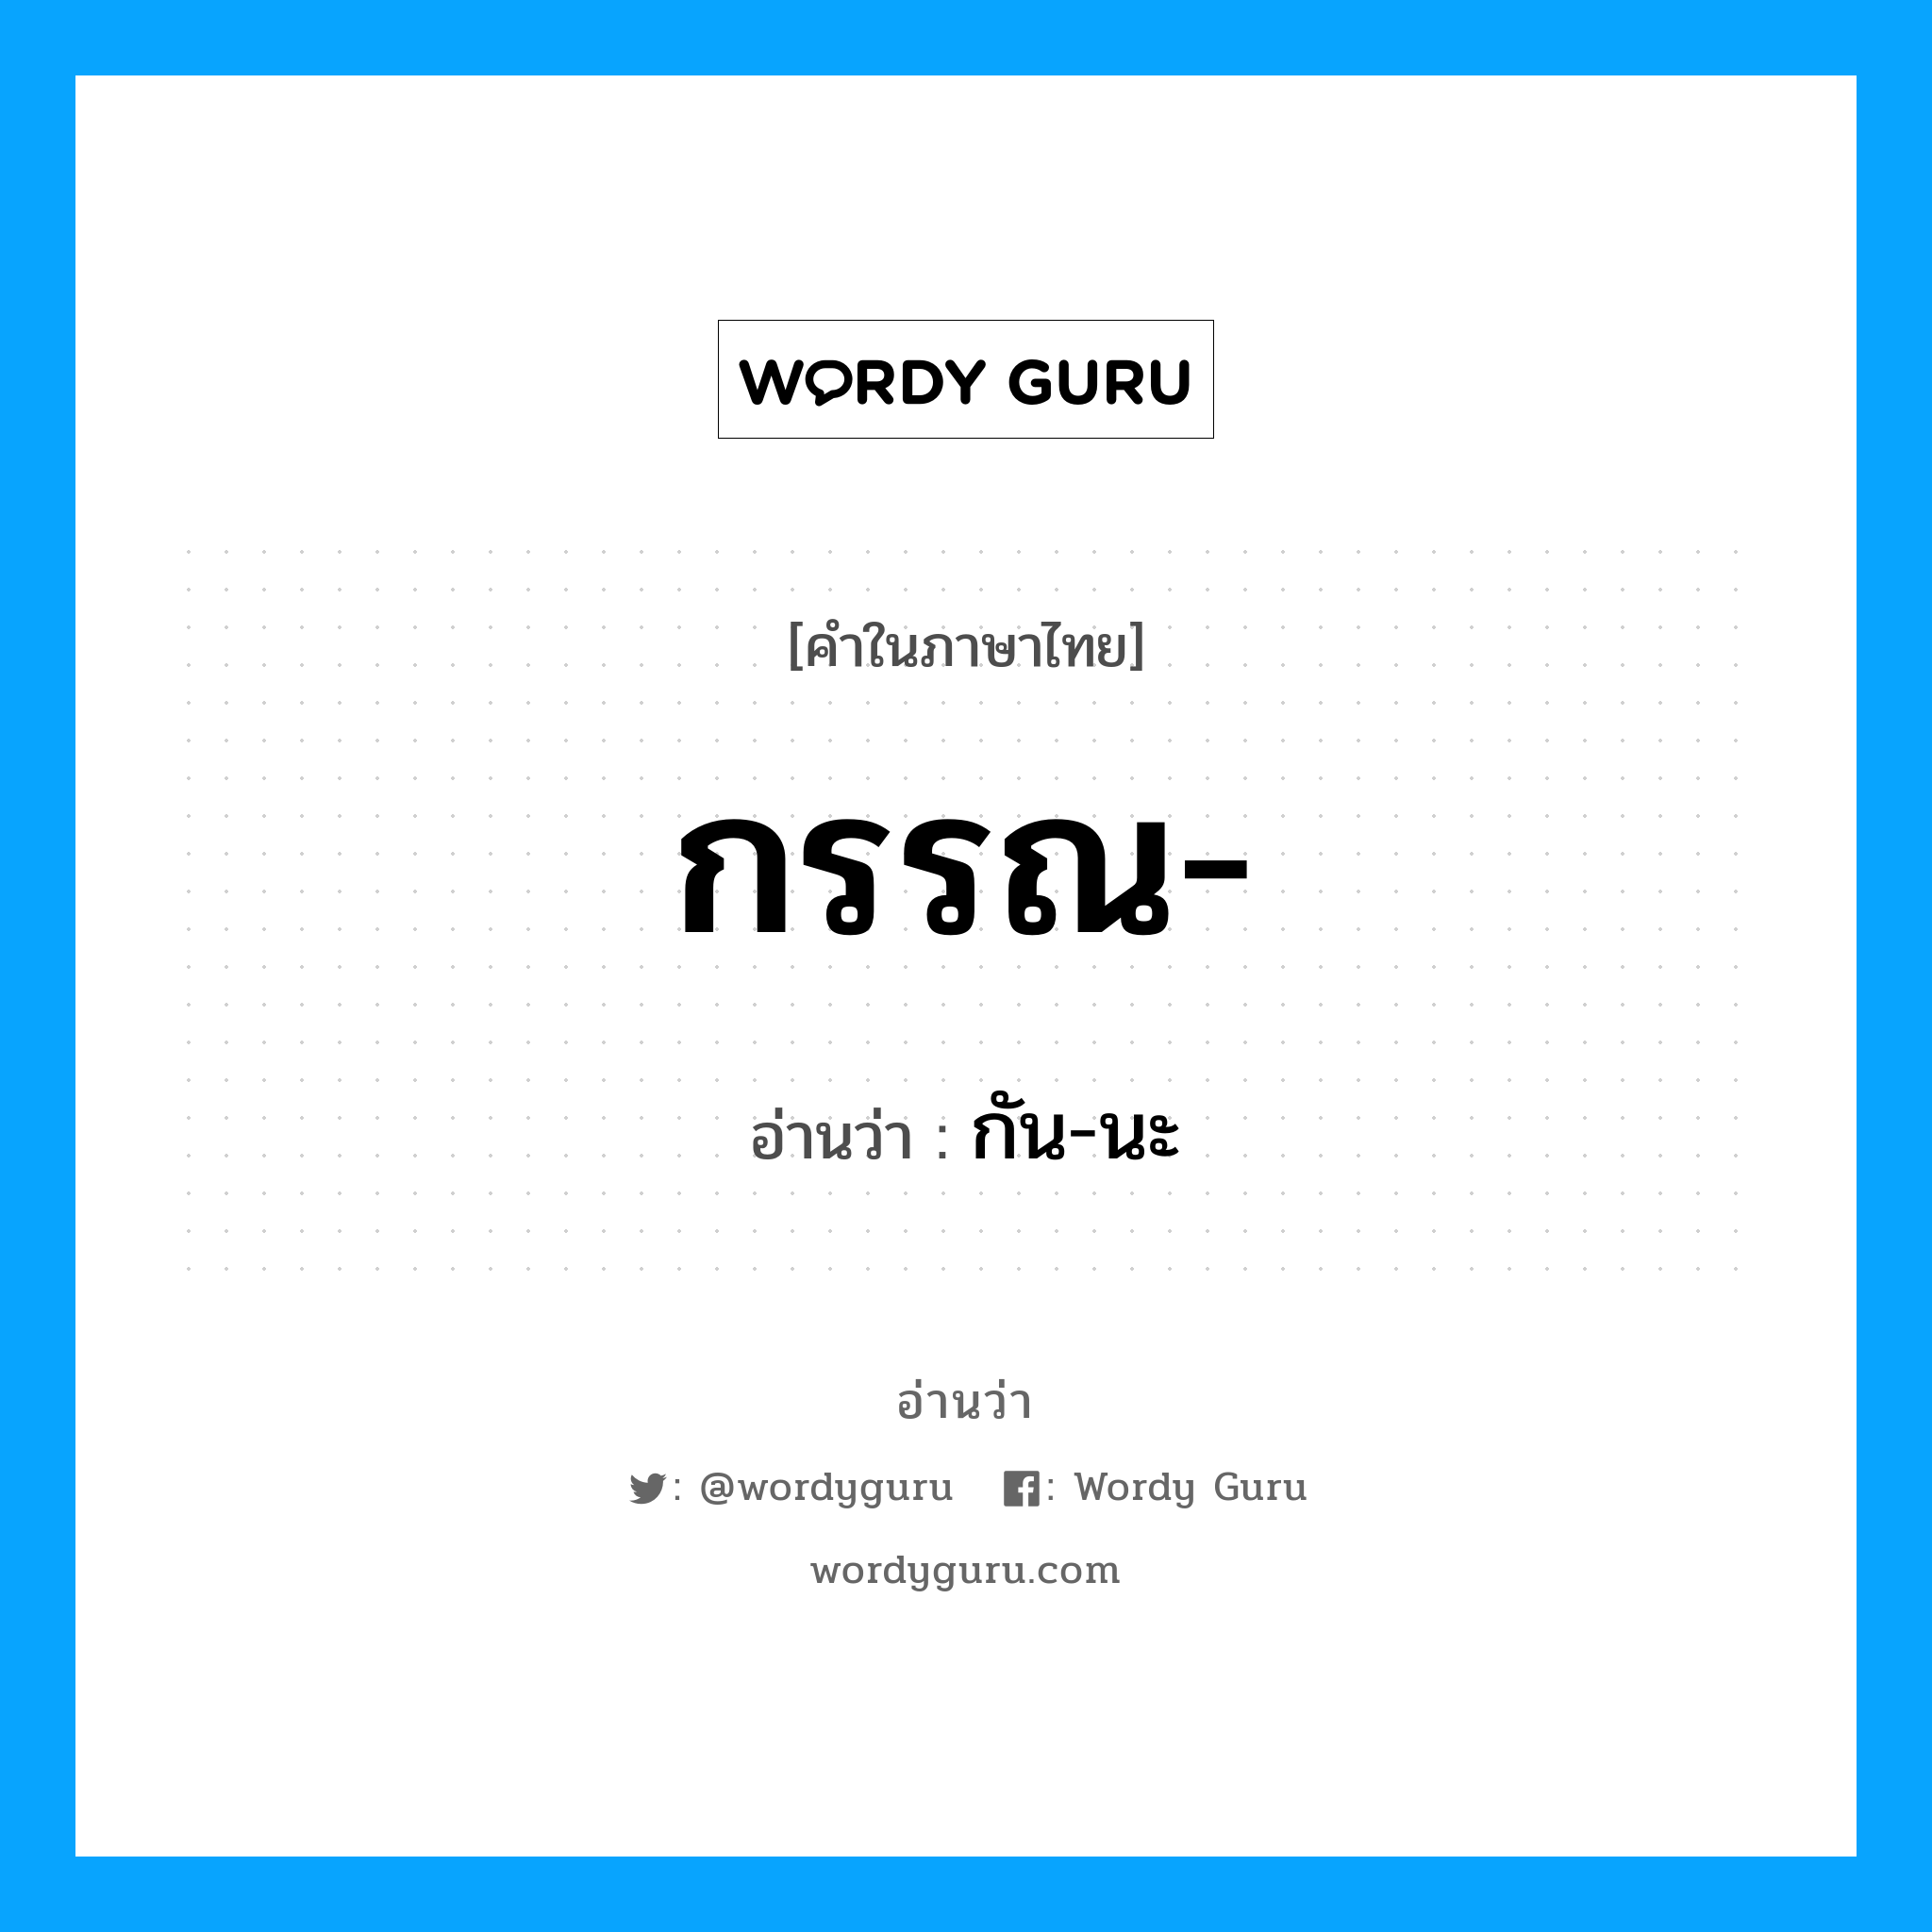 กัน-นะ เป็นคำอ่านของคำไหน?, คำในภาษาไทย กัน-นะ อ่านว่า กรรณ-